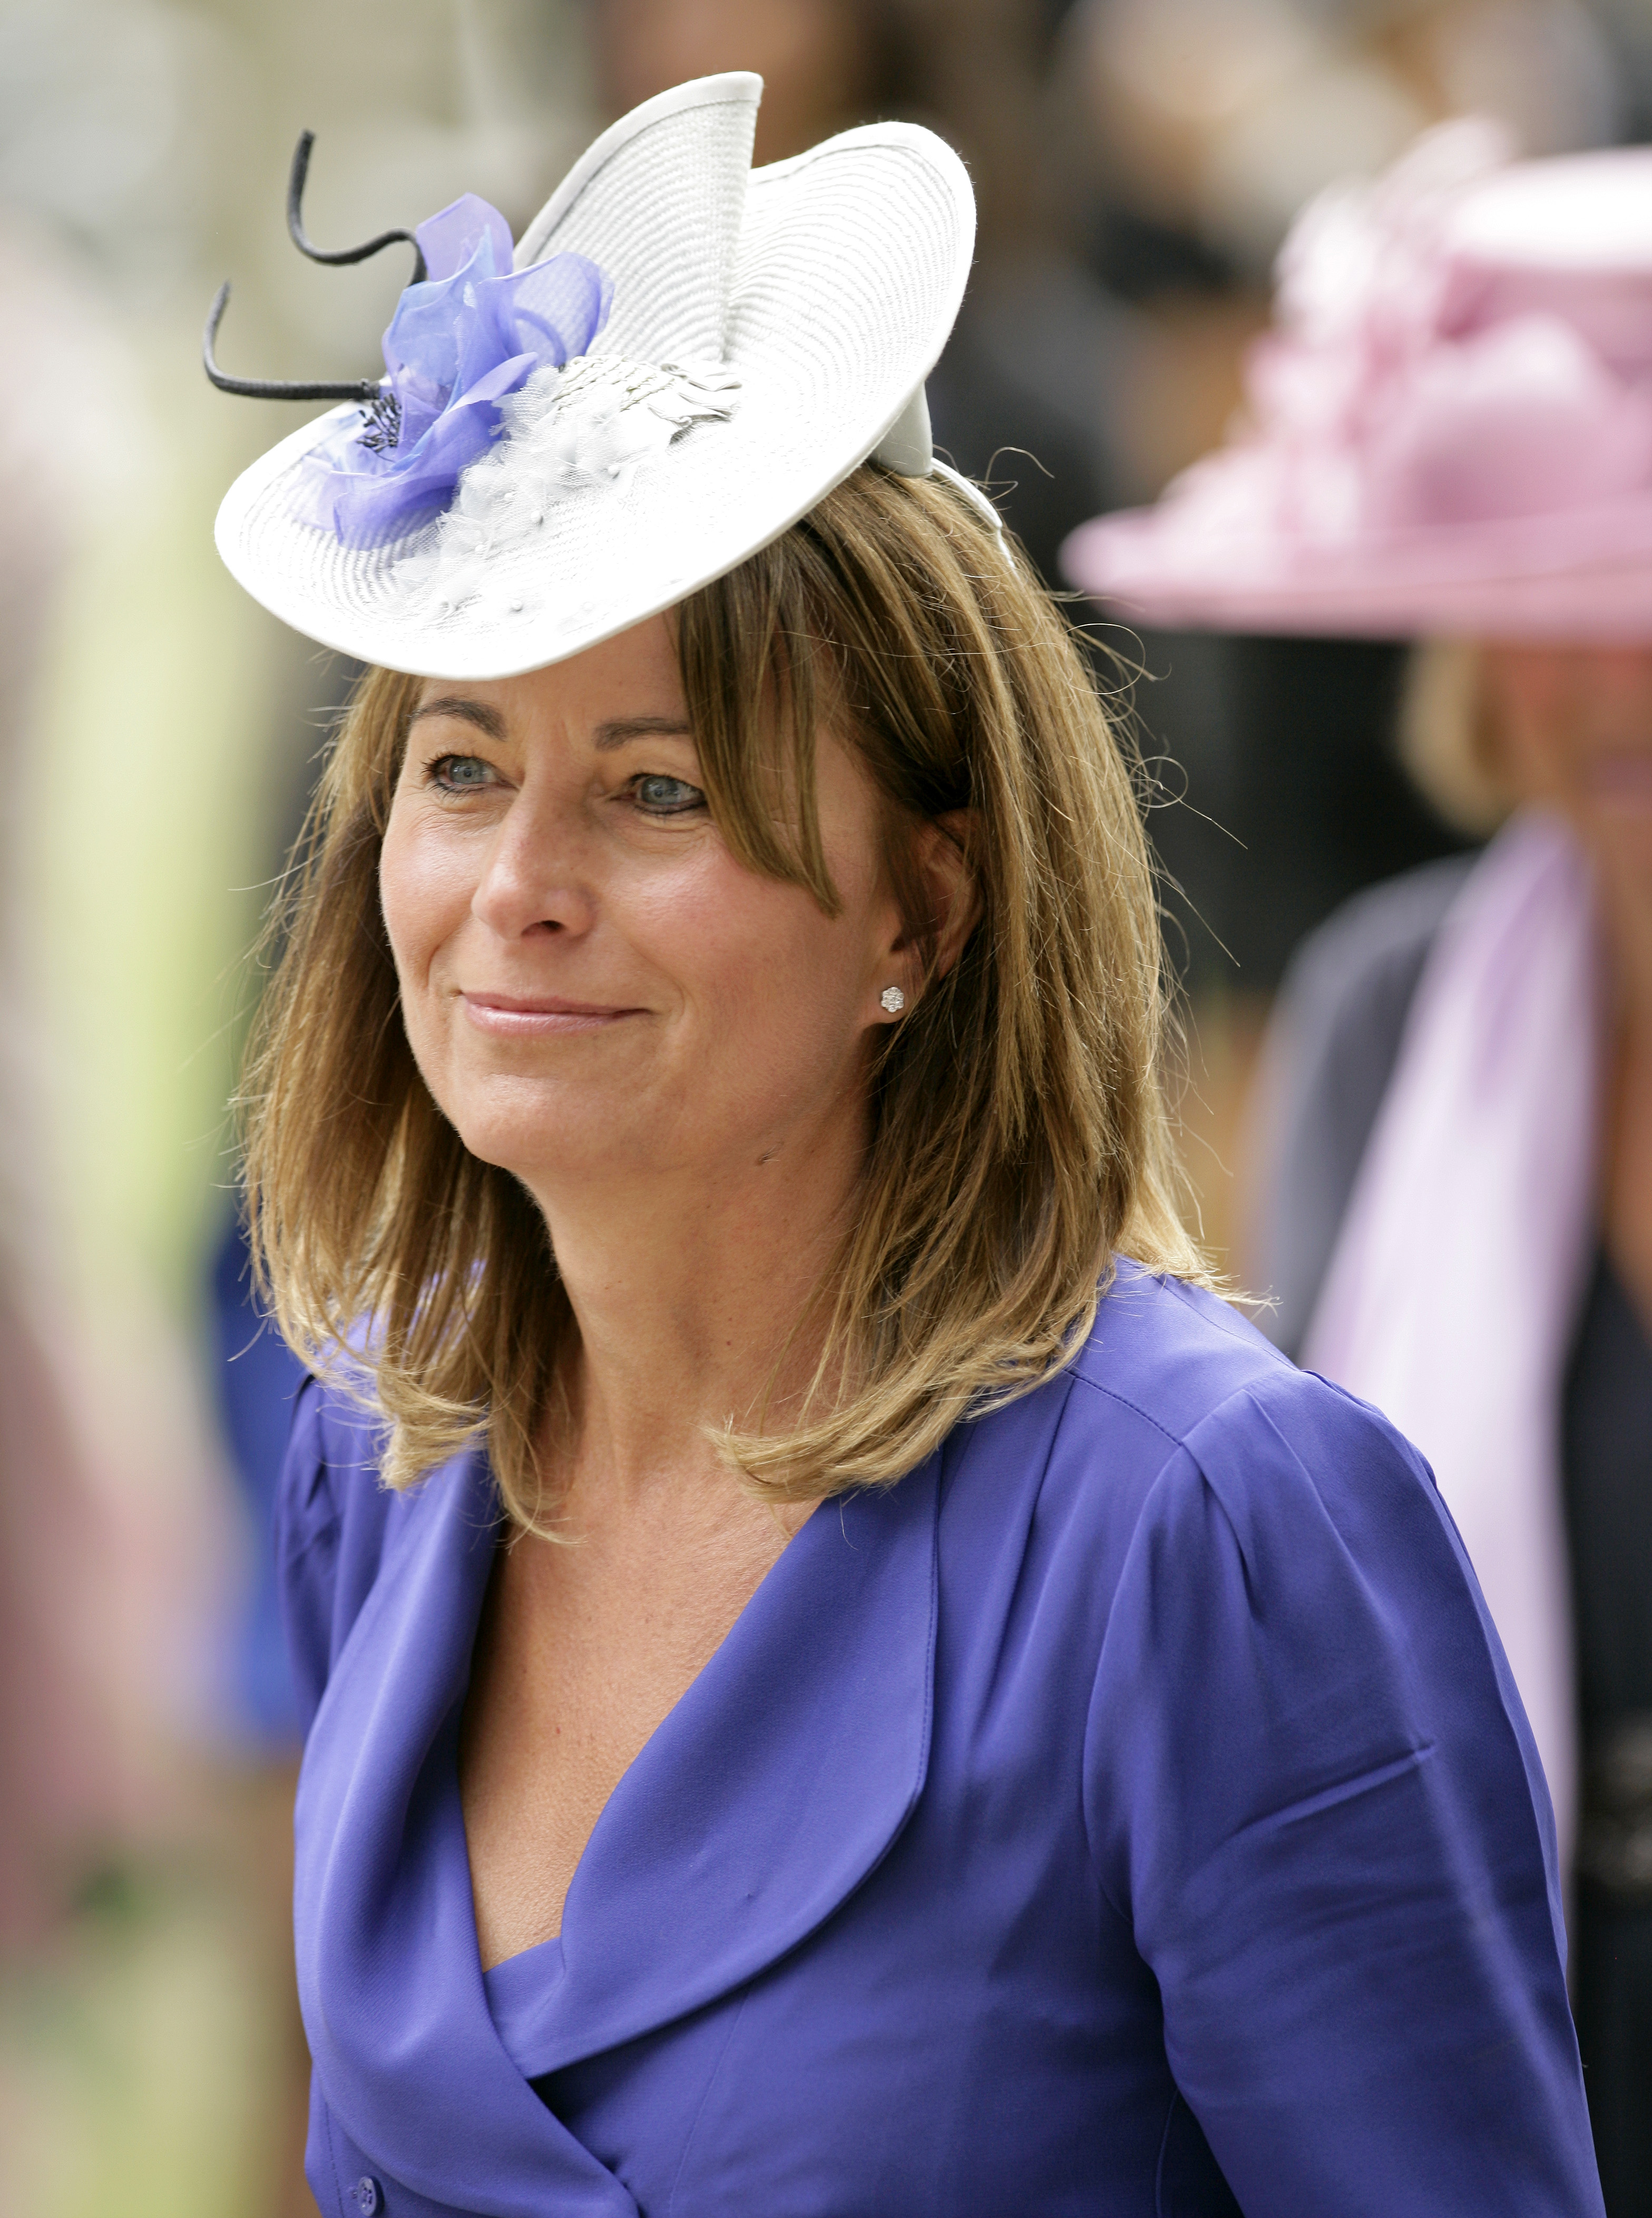 Carole Middleton besucht Tag 5 von Royal Ascot auf der Ascot Rennbahn in England, am 19. Juni 2010. | Quelle: Getty Images